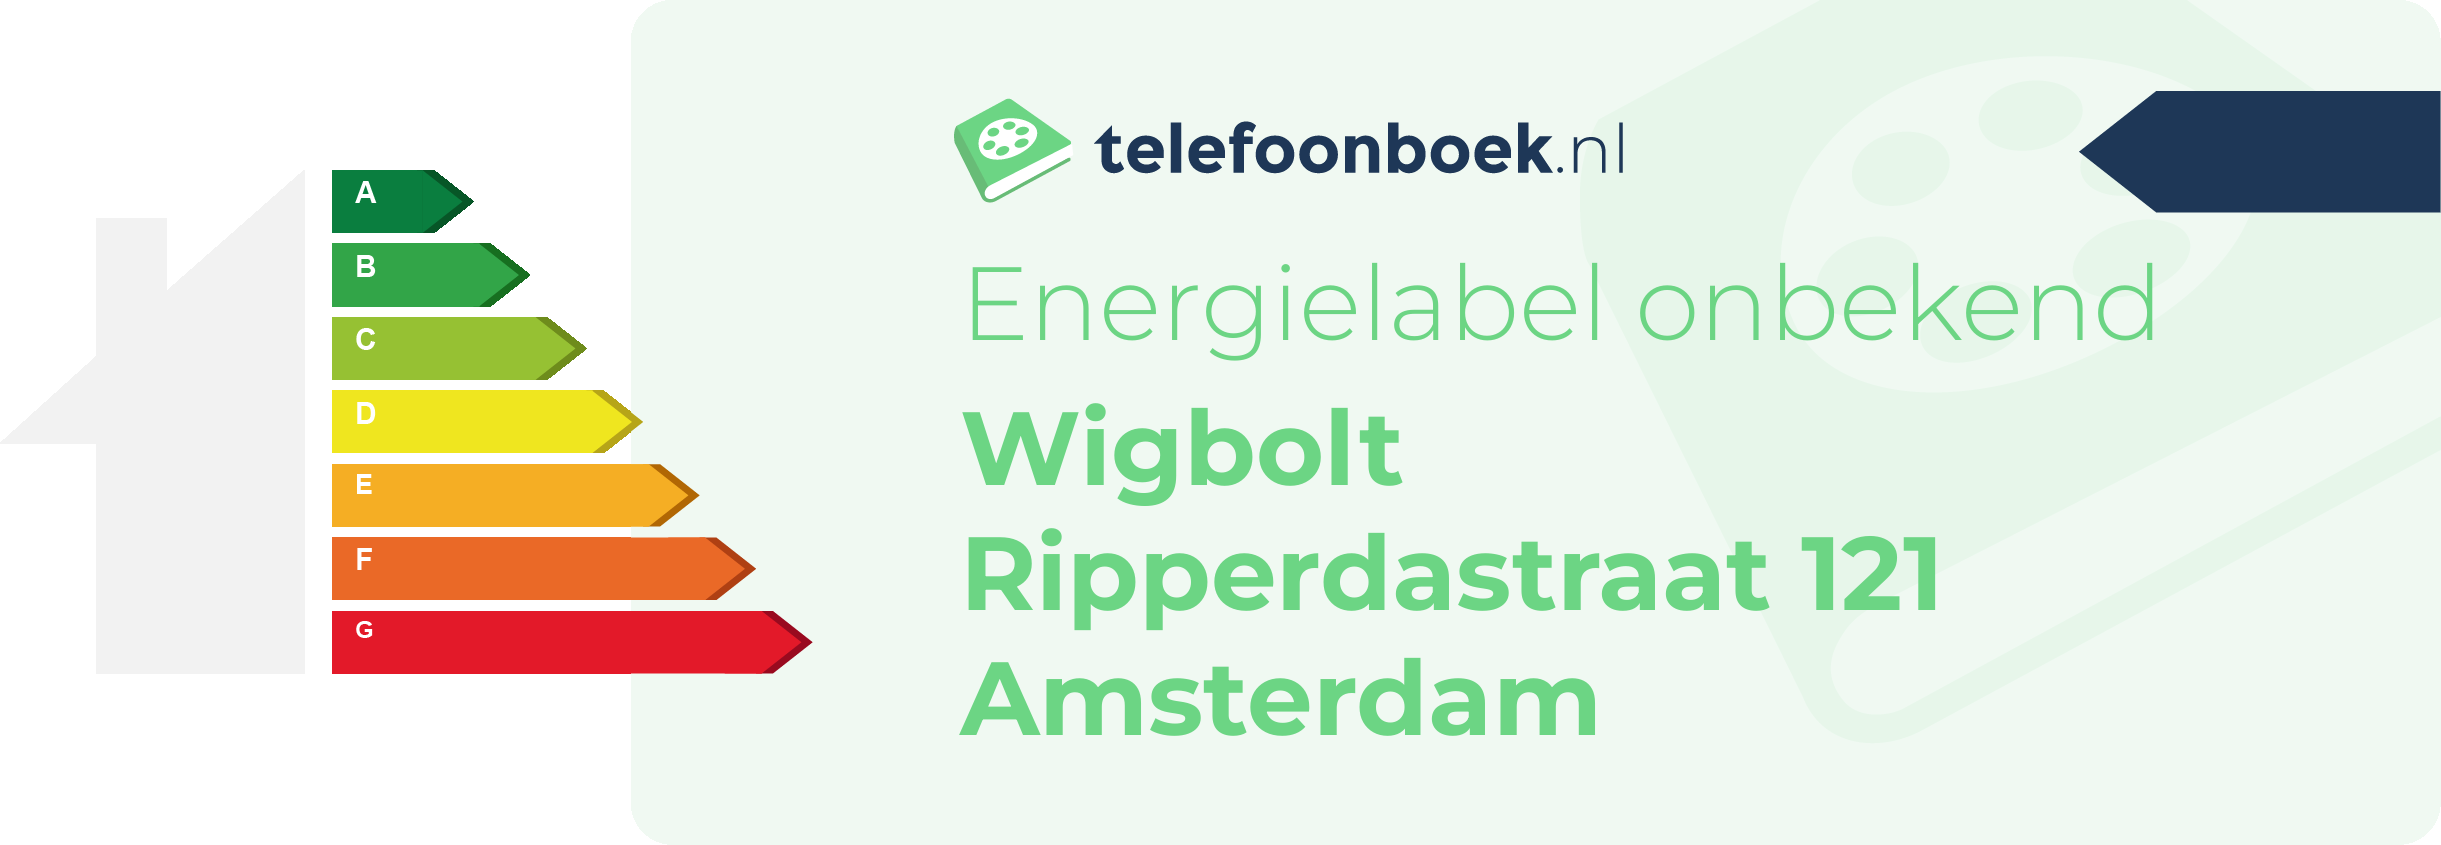 Energielabel Wigbolt Ripperdastraat 121 Amsterdam